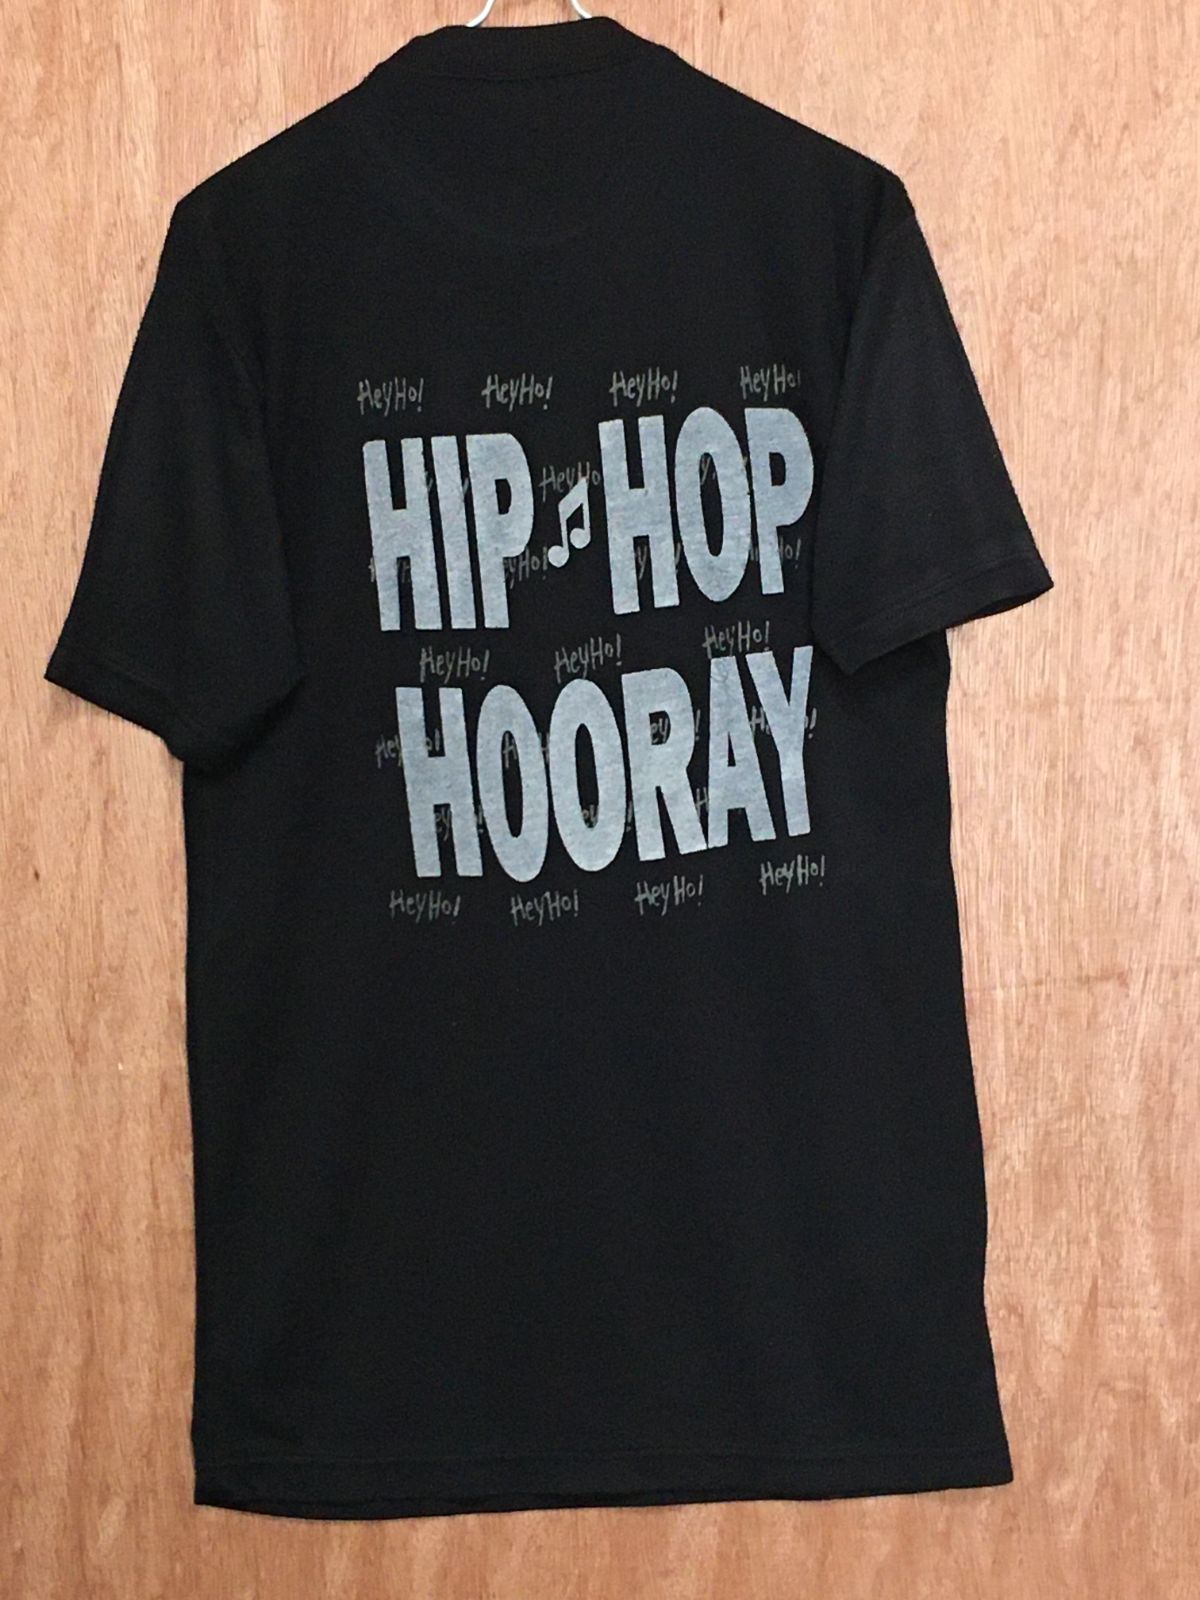 ヤバT❗️X-LARGE ラージ 爆笑Tシャツ hiphop 90's